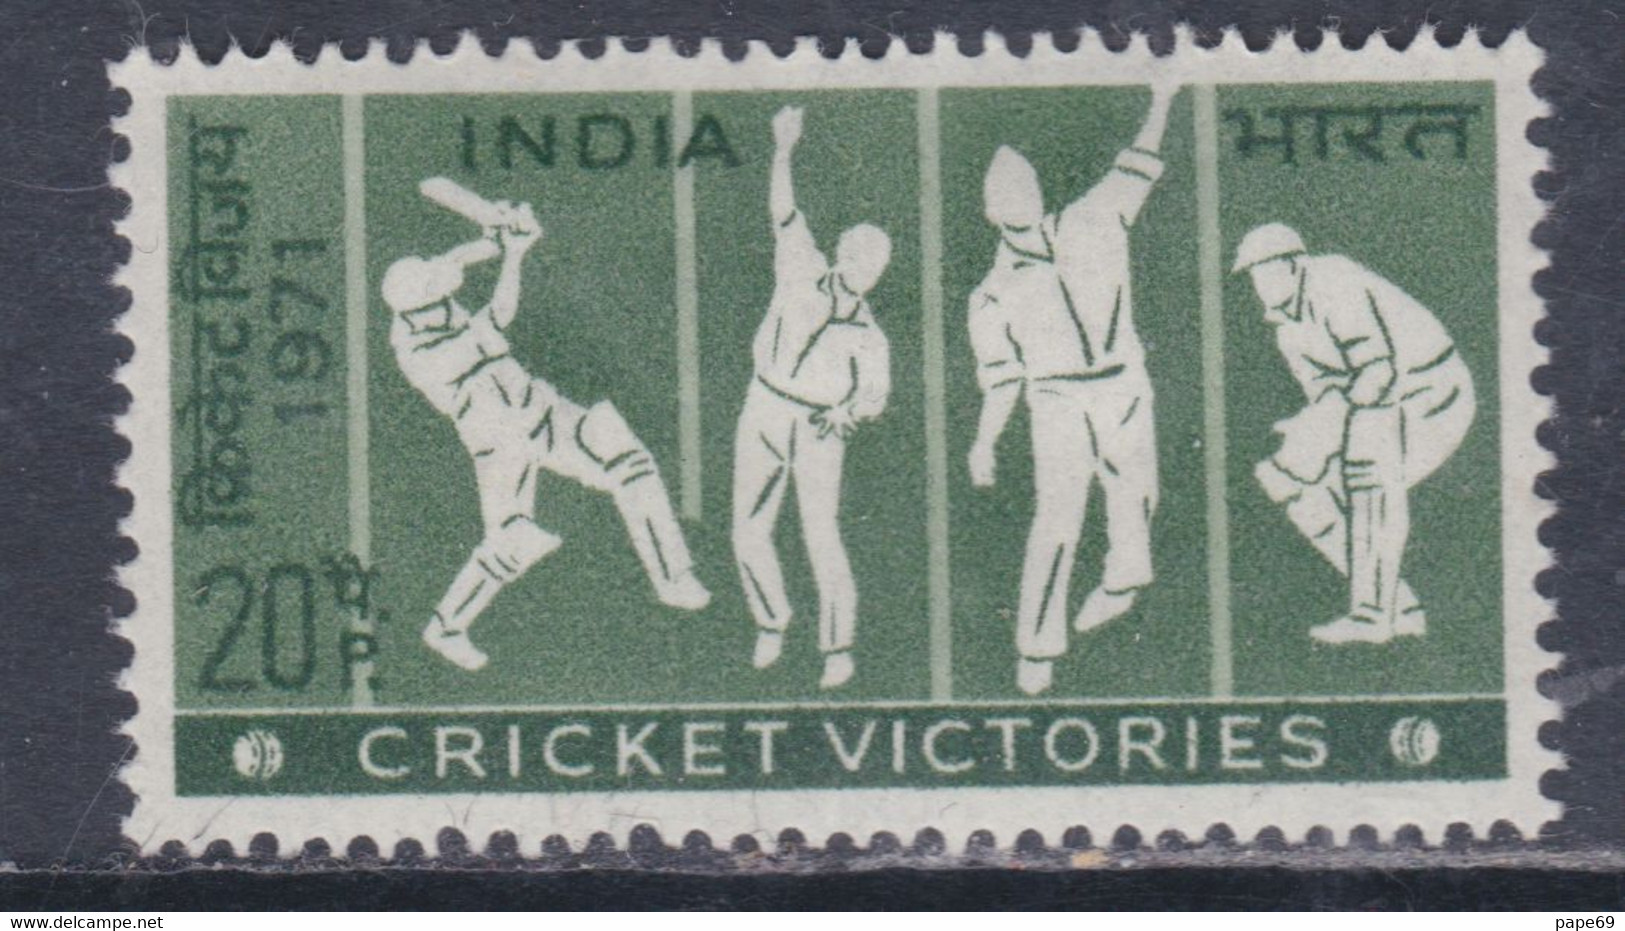 Inde N° 334 X Victoires Indiennes Au Cricket Trace De Charnière Sinon TB - Neufs